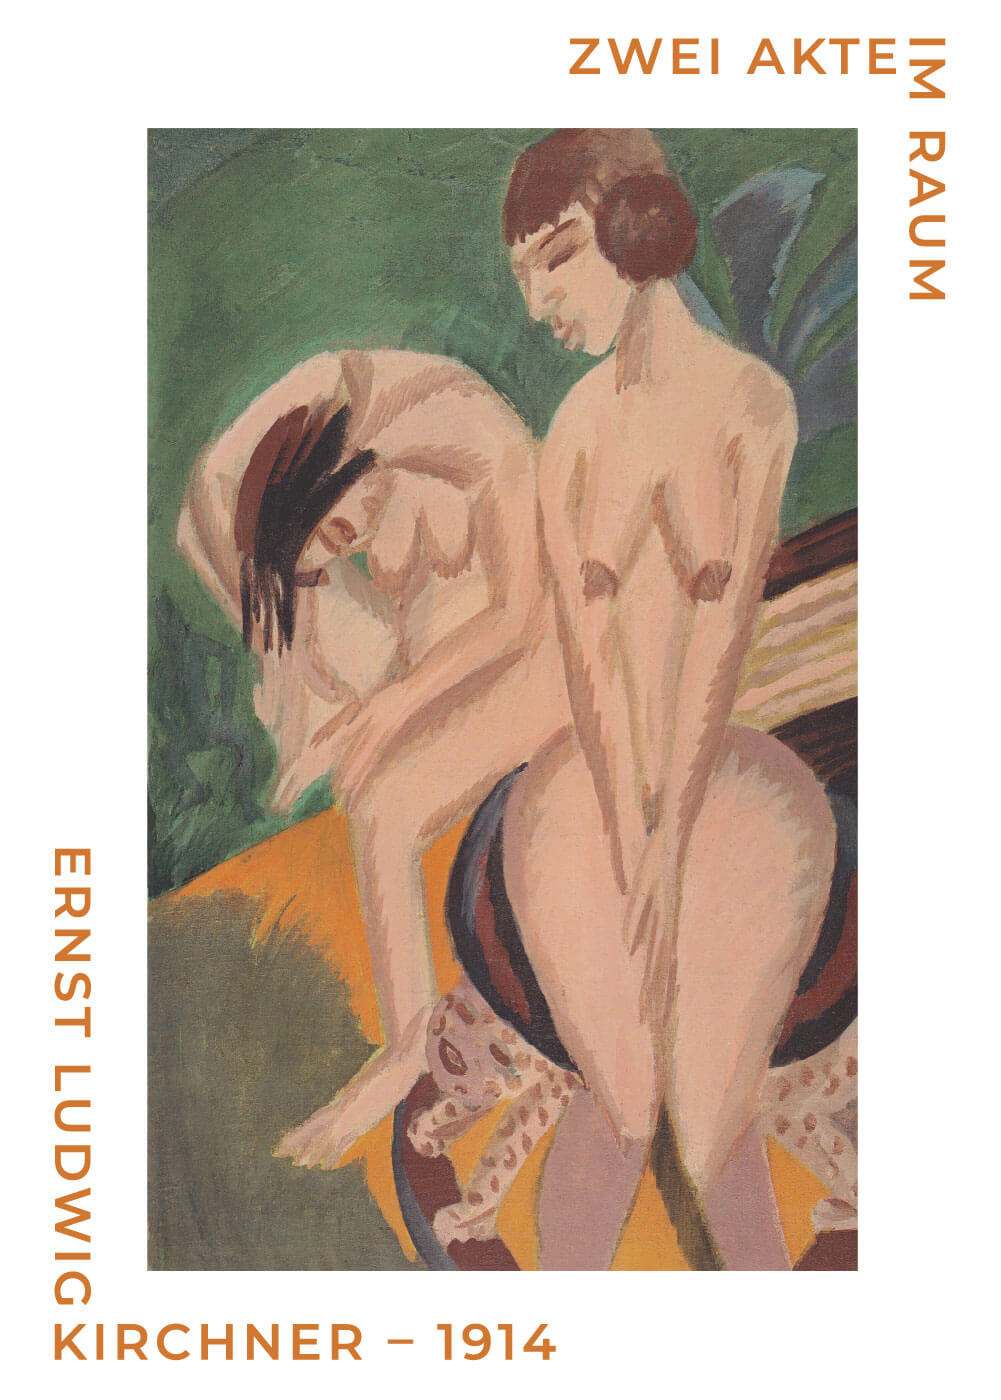 Zwei akteim raum - Ernst L. Kirchner museumsplakat